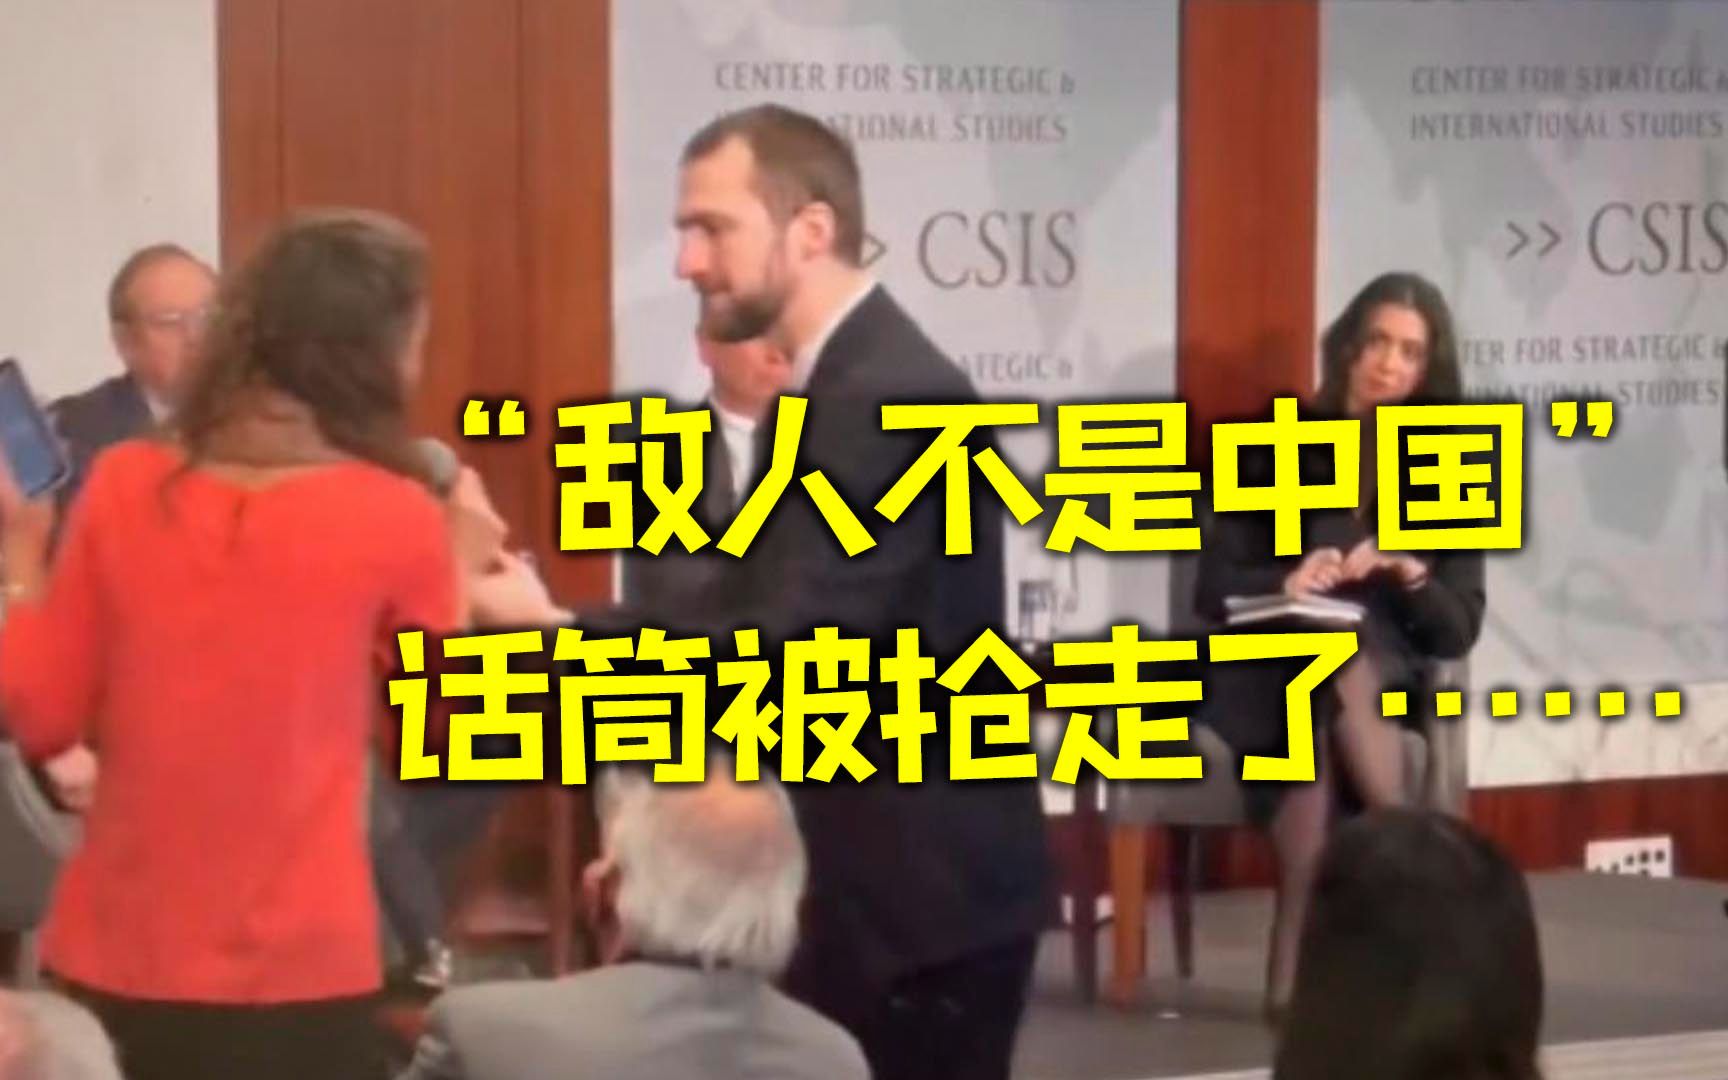 记者质问为何要对抗中国后被抢走话筒